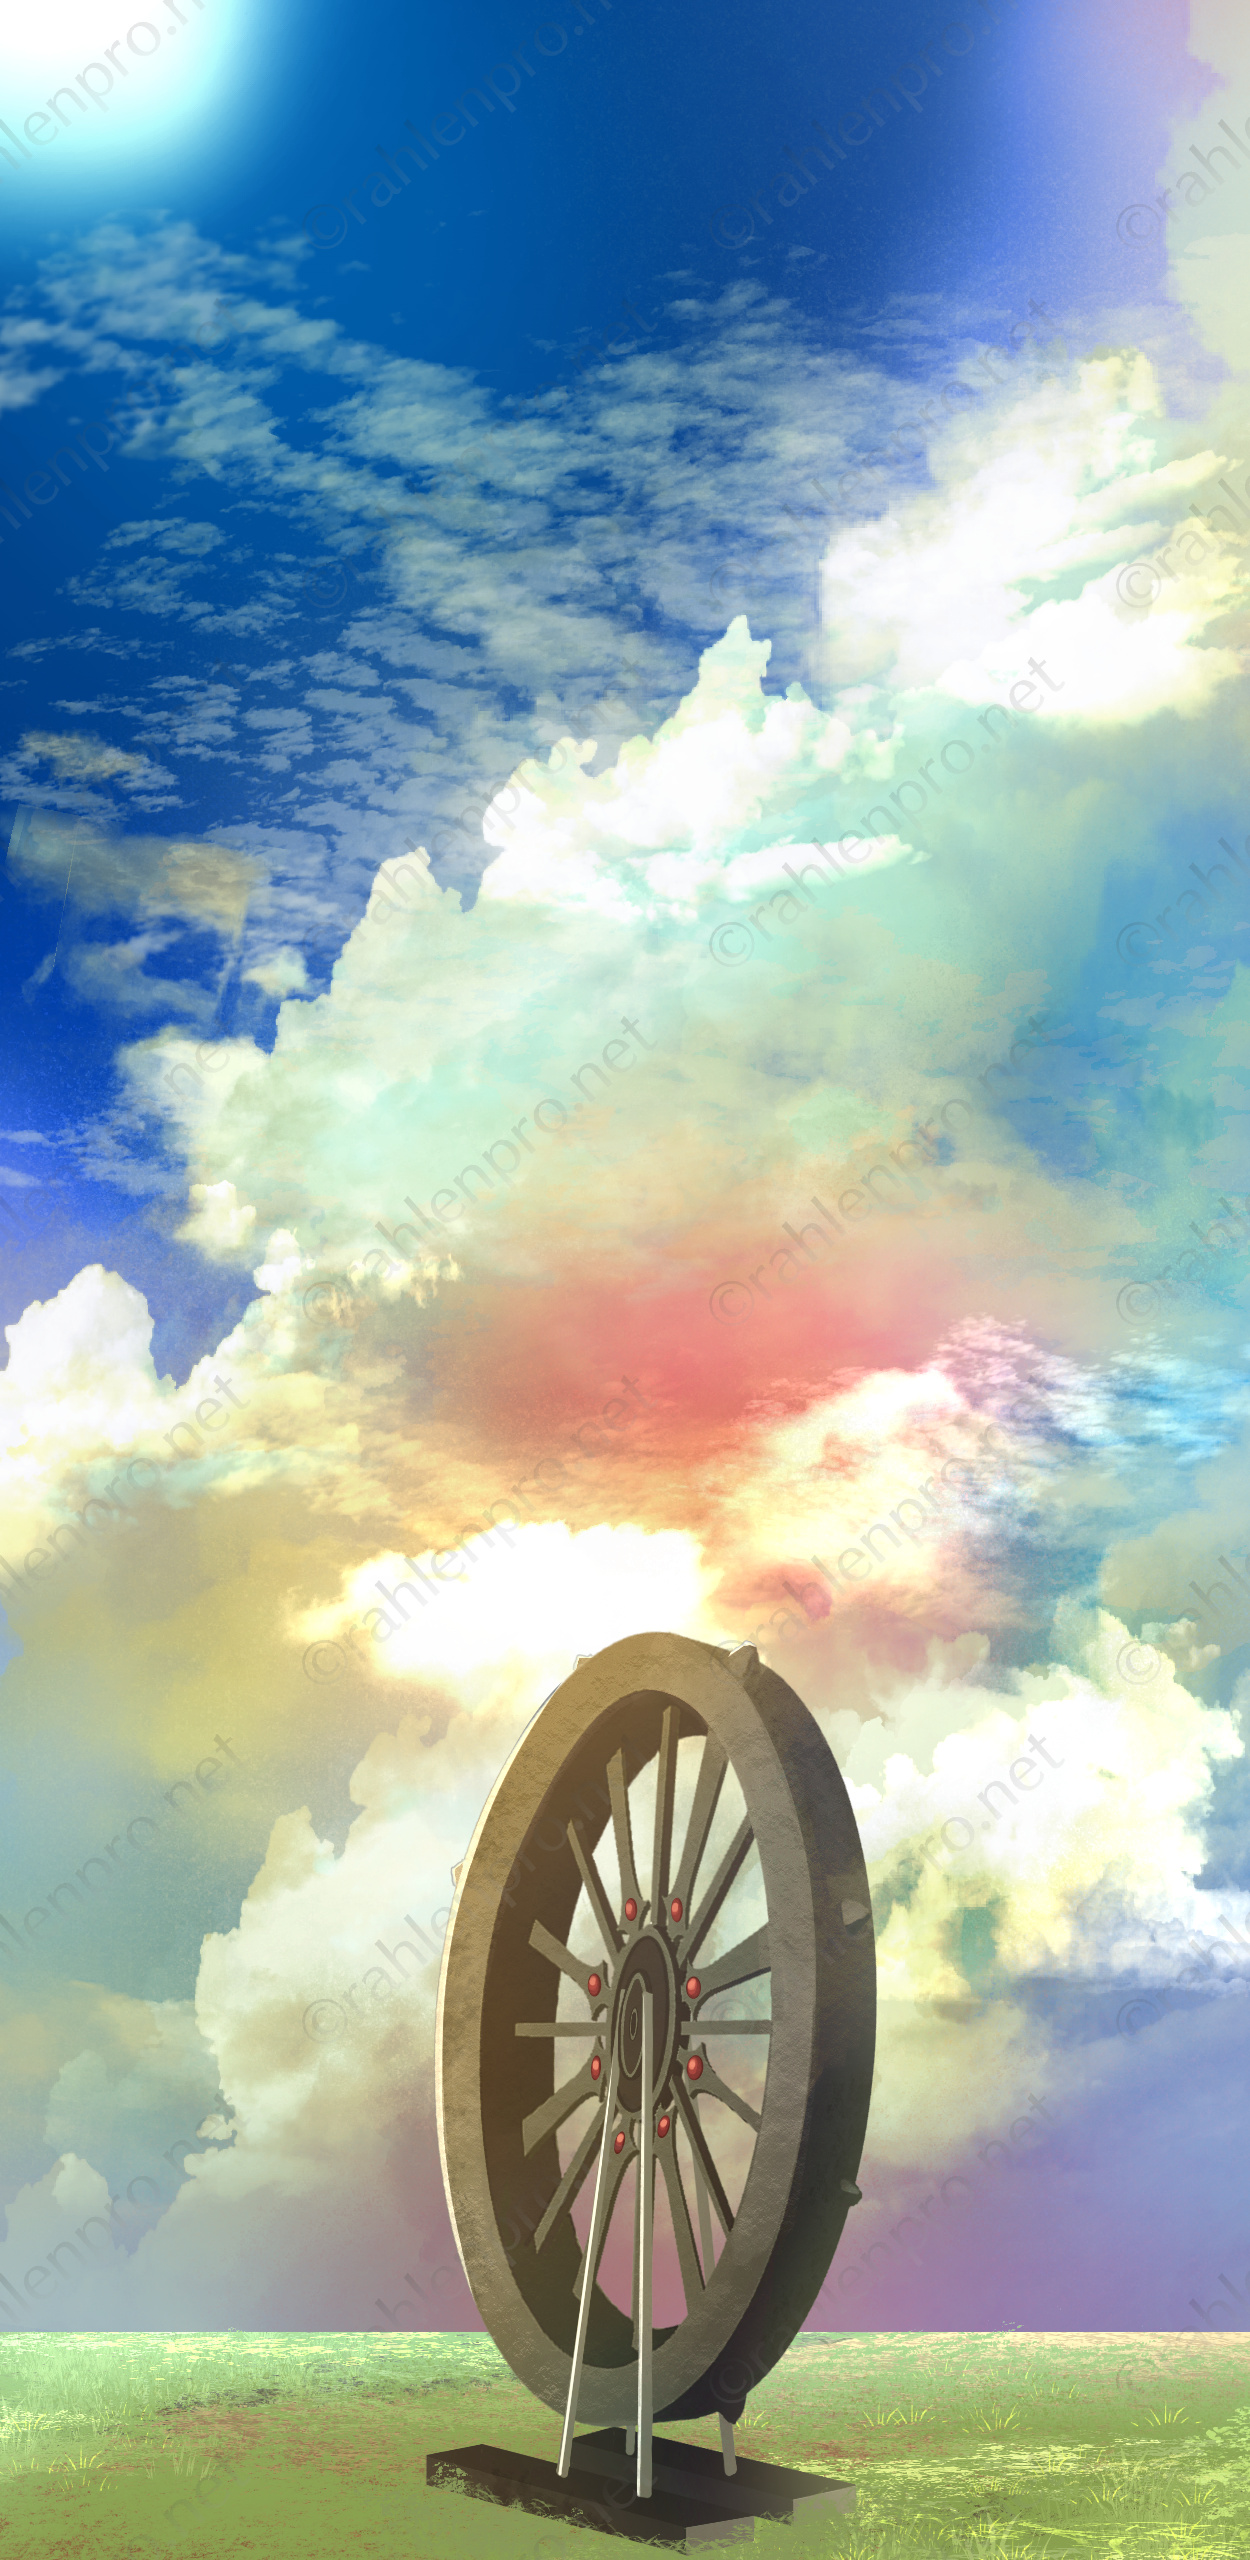 オリジナル　電子書籍　Kindle　表紙　風景　背景　イラスト　仕事絵　ファンタジー　空　雲　車輪